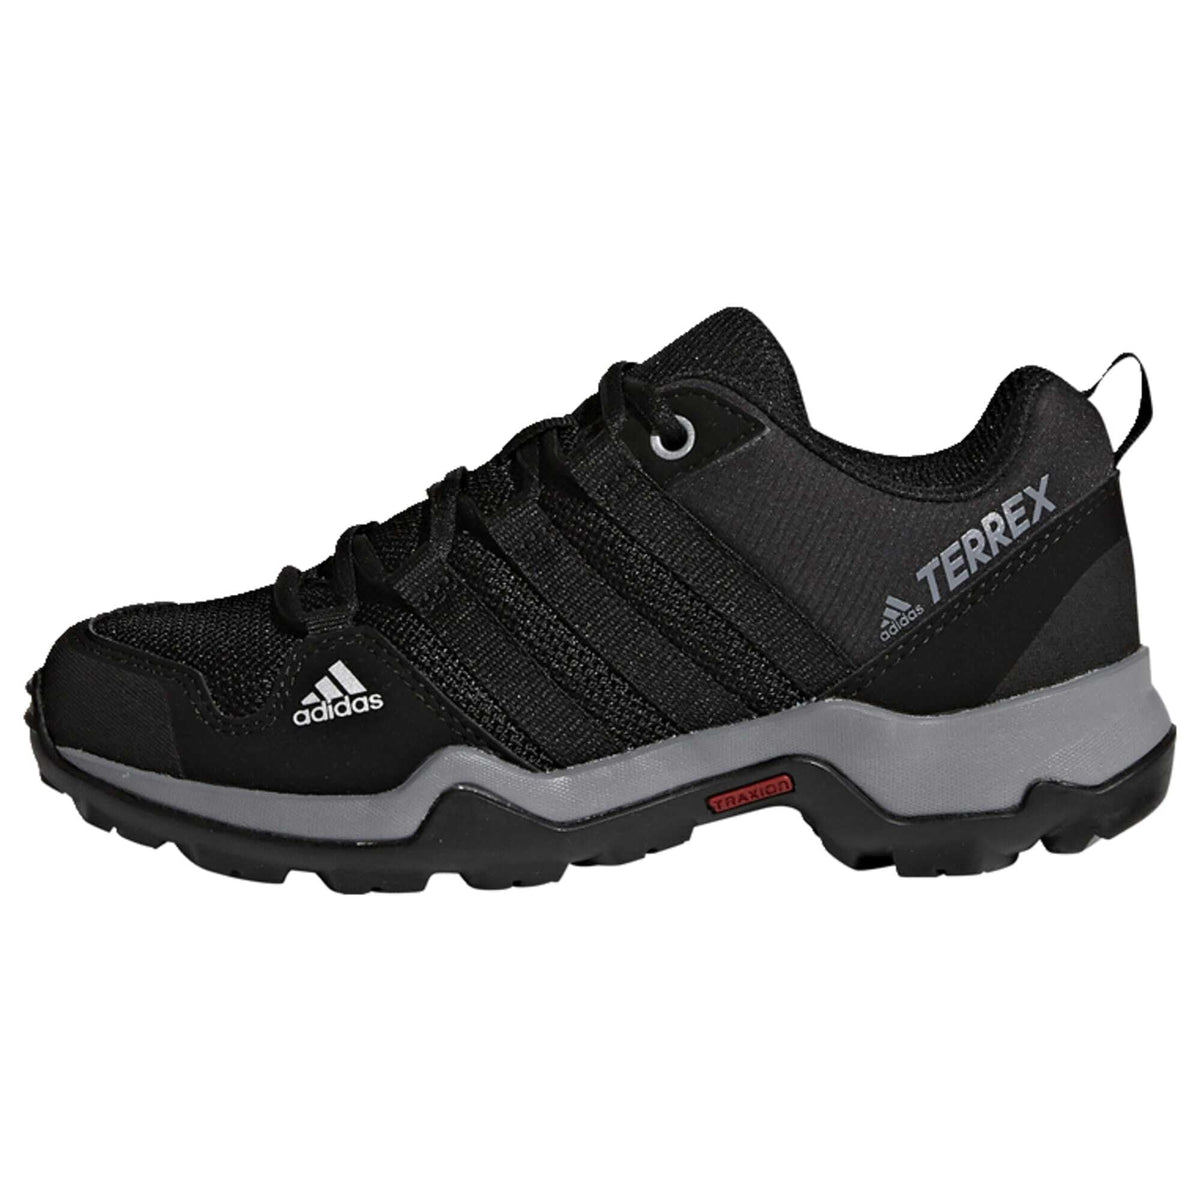 adidas Unisex Kids Terrex Ax2r walking boots, Schwarz, 12.5 UK Child